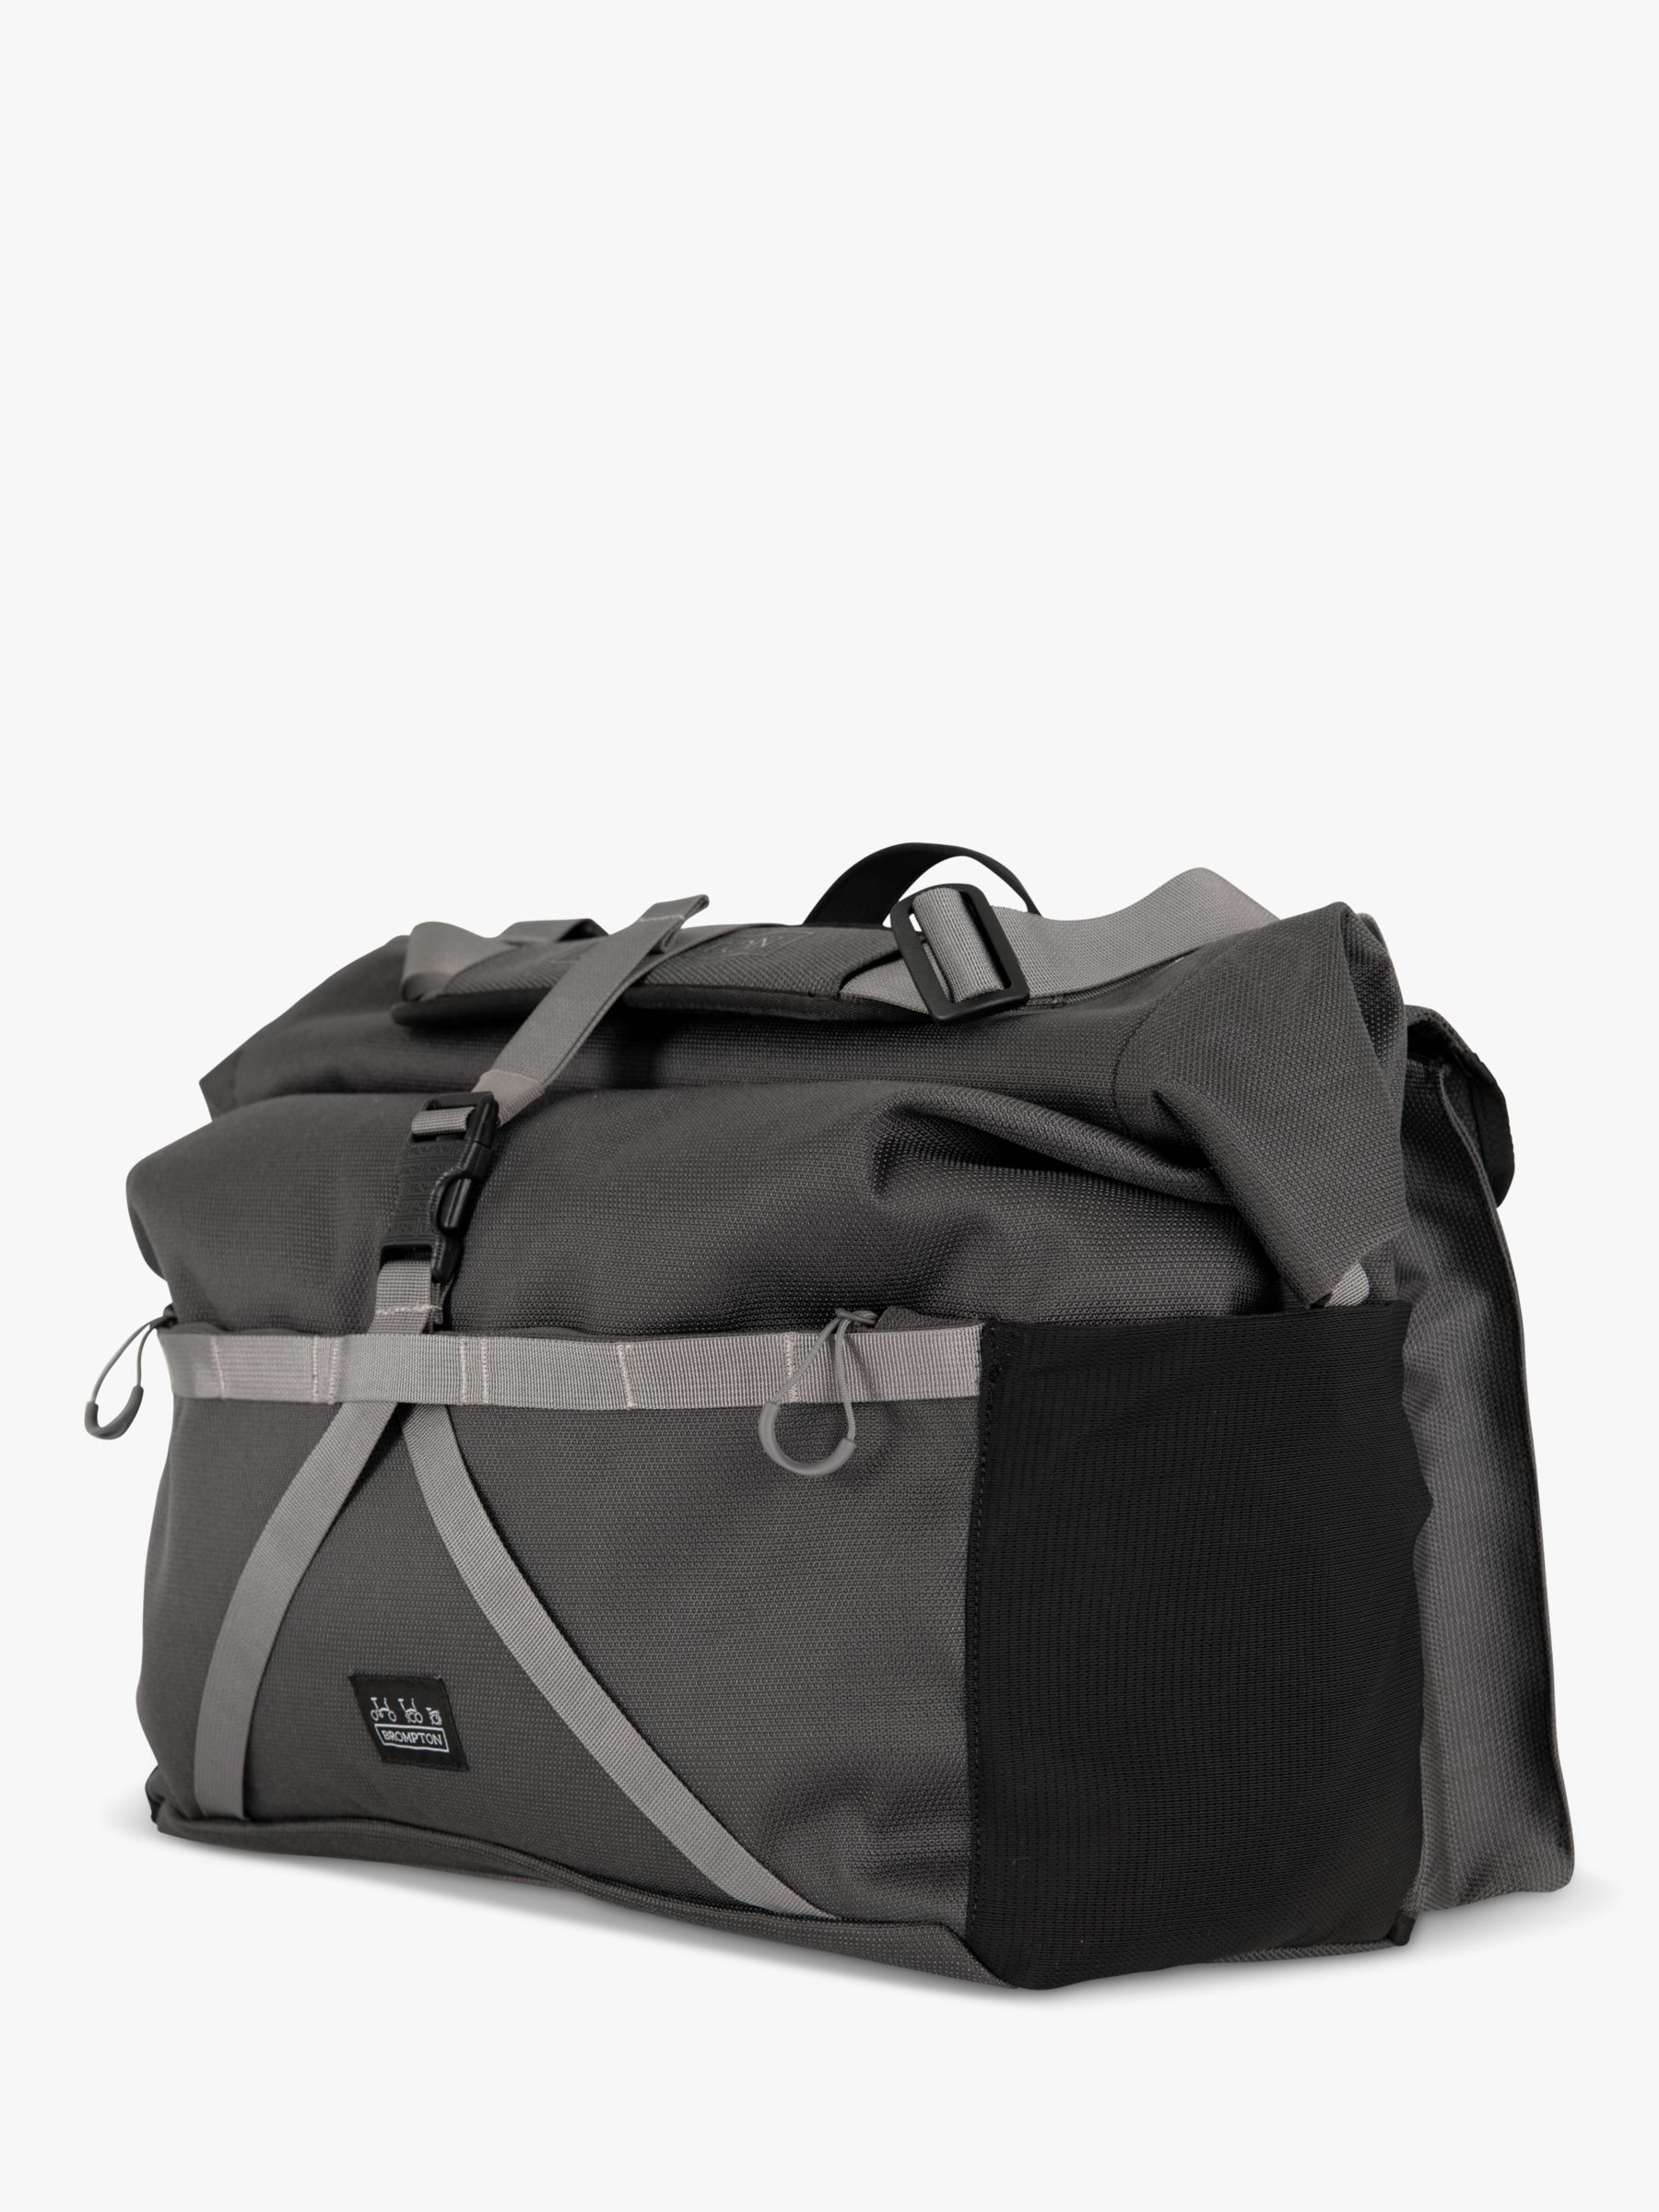 Brompton Borough Roll Top Bag Large, Dark Grey